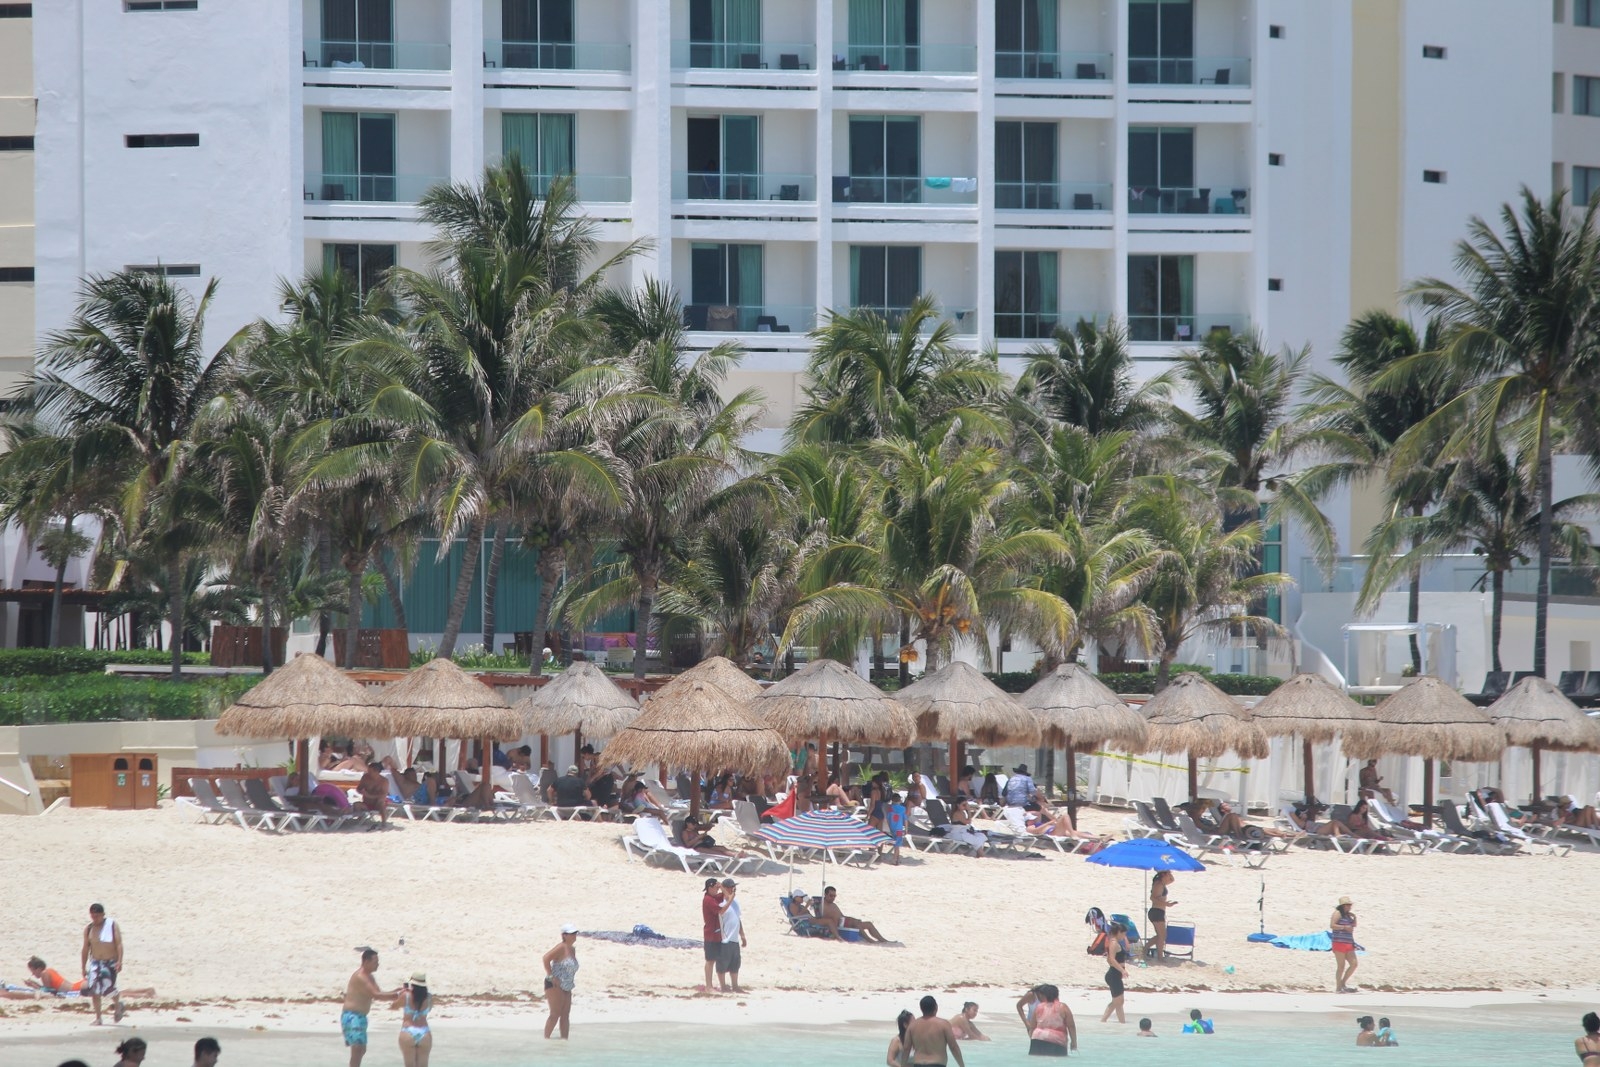 Hoteles en Quintana Roo: Zona Norte, con ocupación del 81.6% previo a Verano